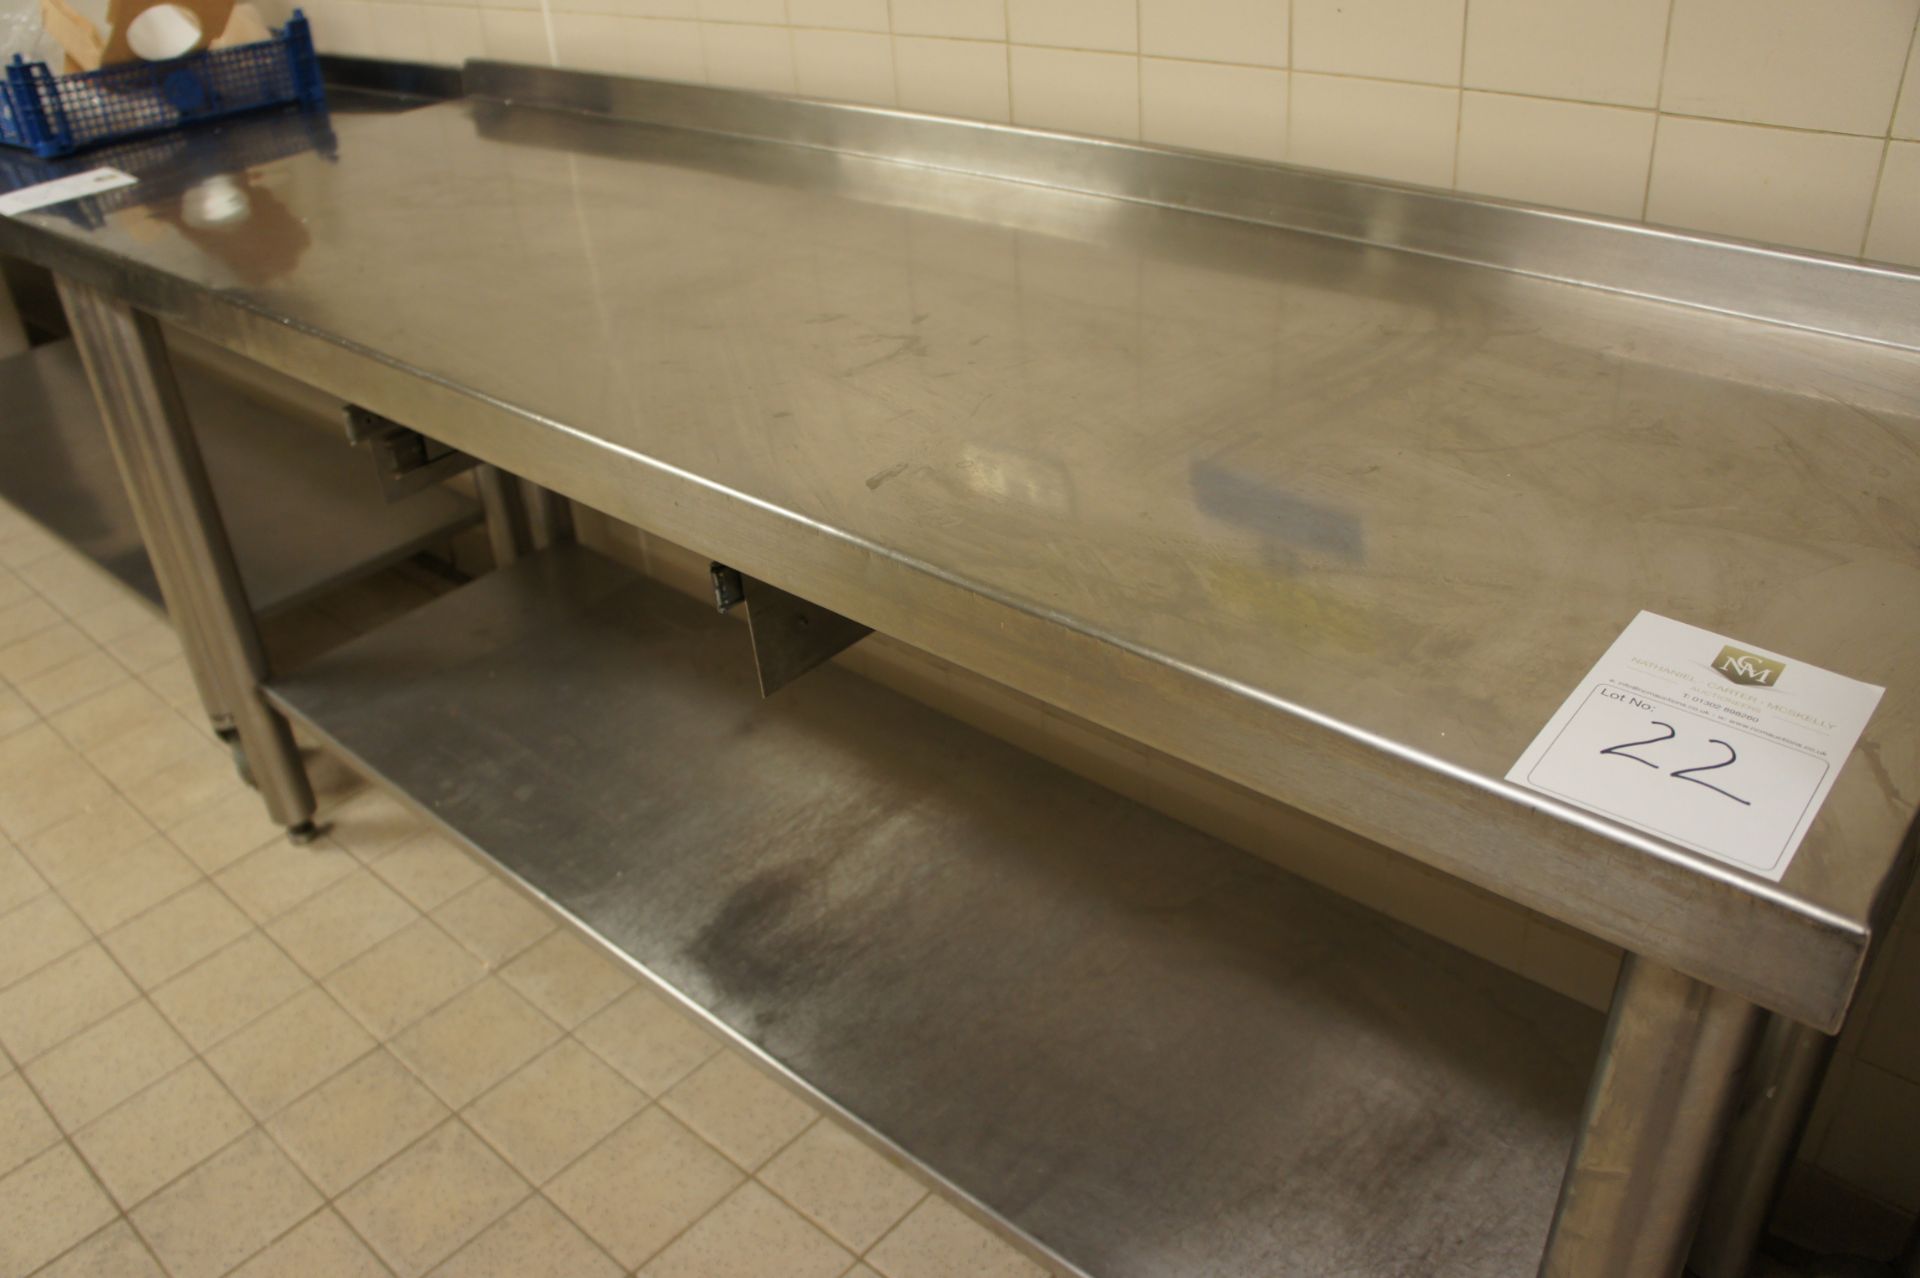 Stainless steel preparation table with shelf under, 1800mm - Bild 2 aus 2